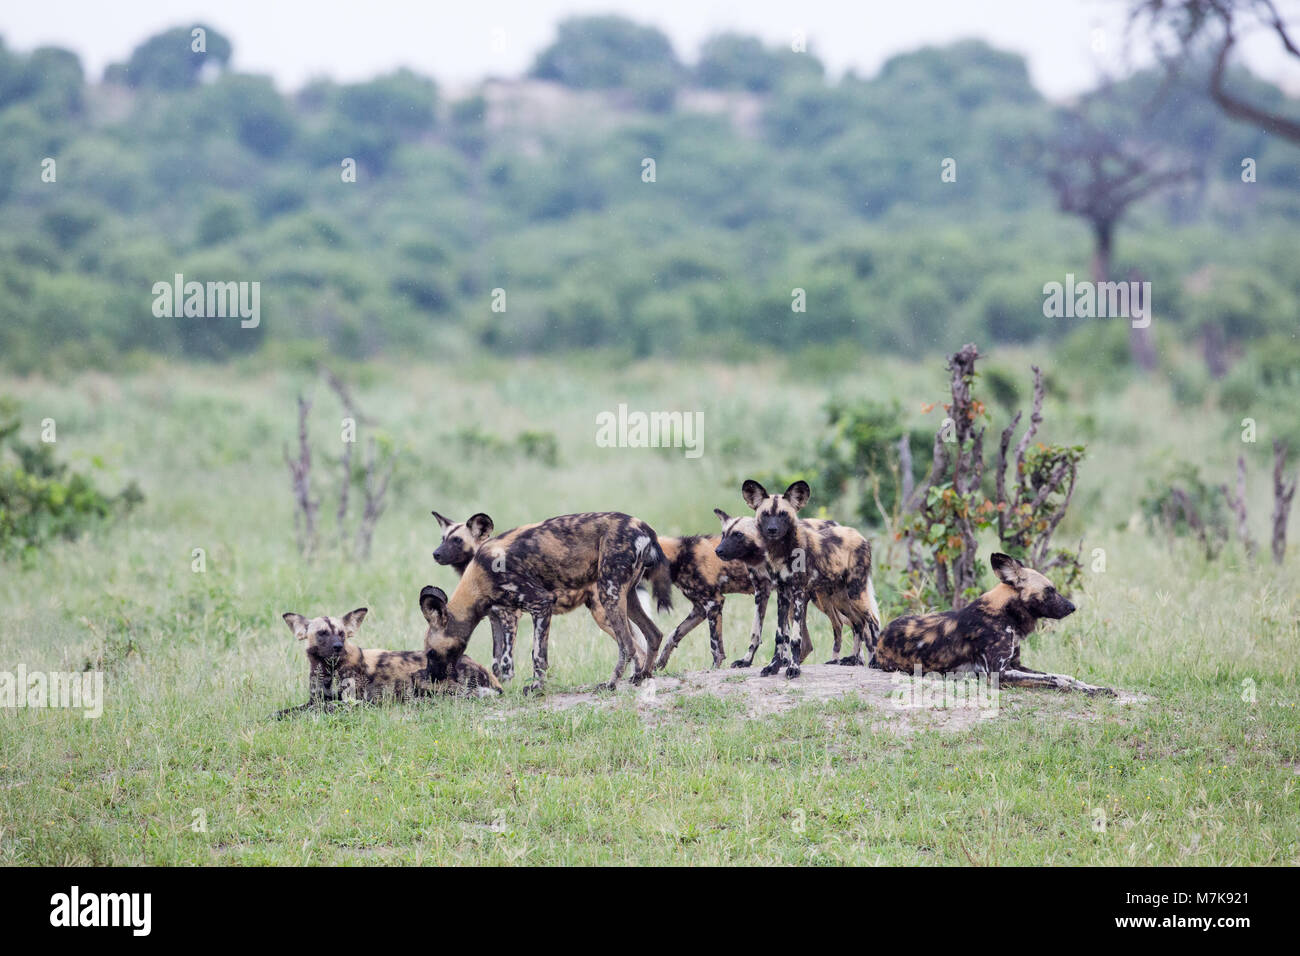 Chien de chasse africains (Lycaon pictus), cultivés family pack de 7. En attente d'une décision de quitter et vous pouvez chercher probablement animal de proie. Reposant sur une basse pe Banque D'Images